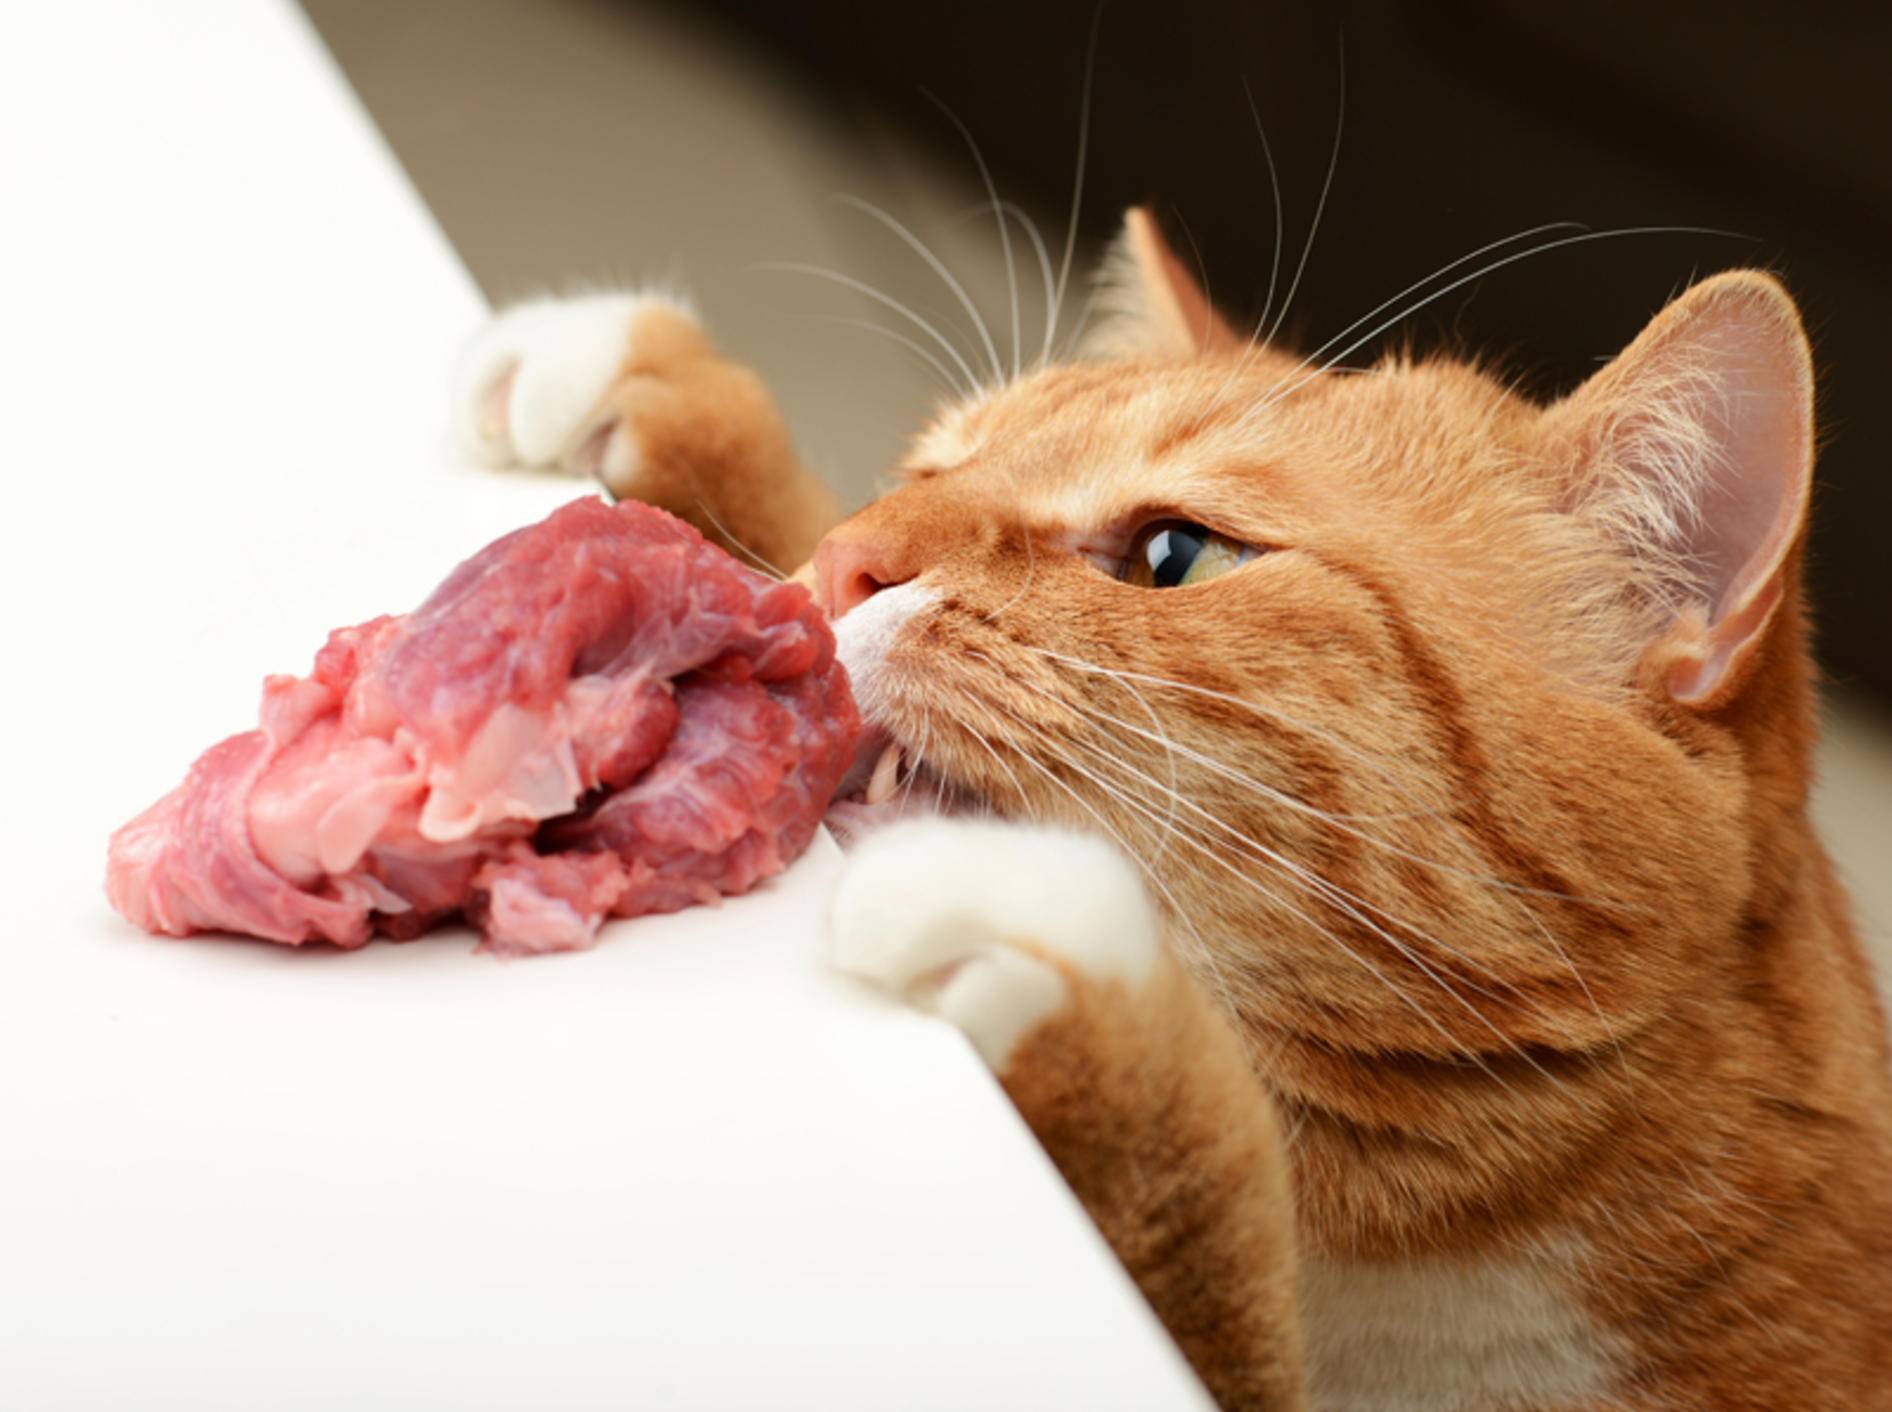 Katzen können durch rohes Schweinefleisch die gefährliche Aujeszkysche Krankheit bekommen – Shutterstock / Master L